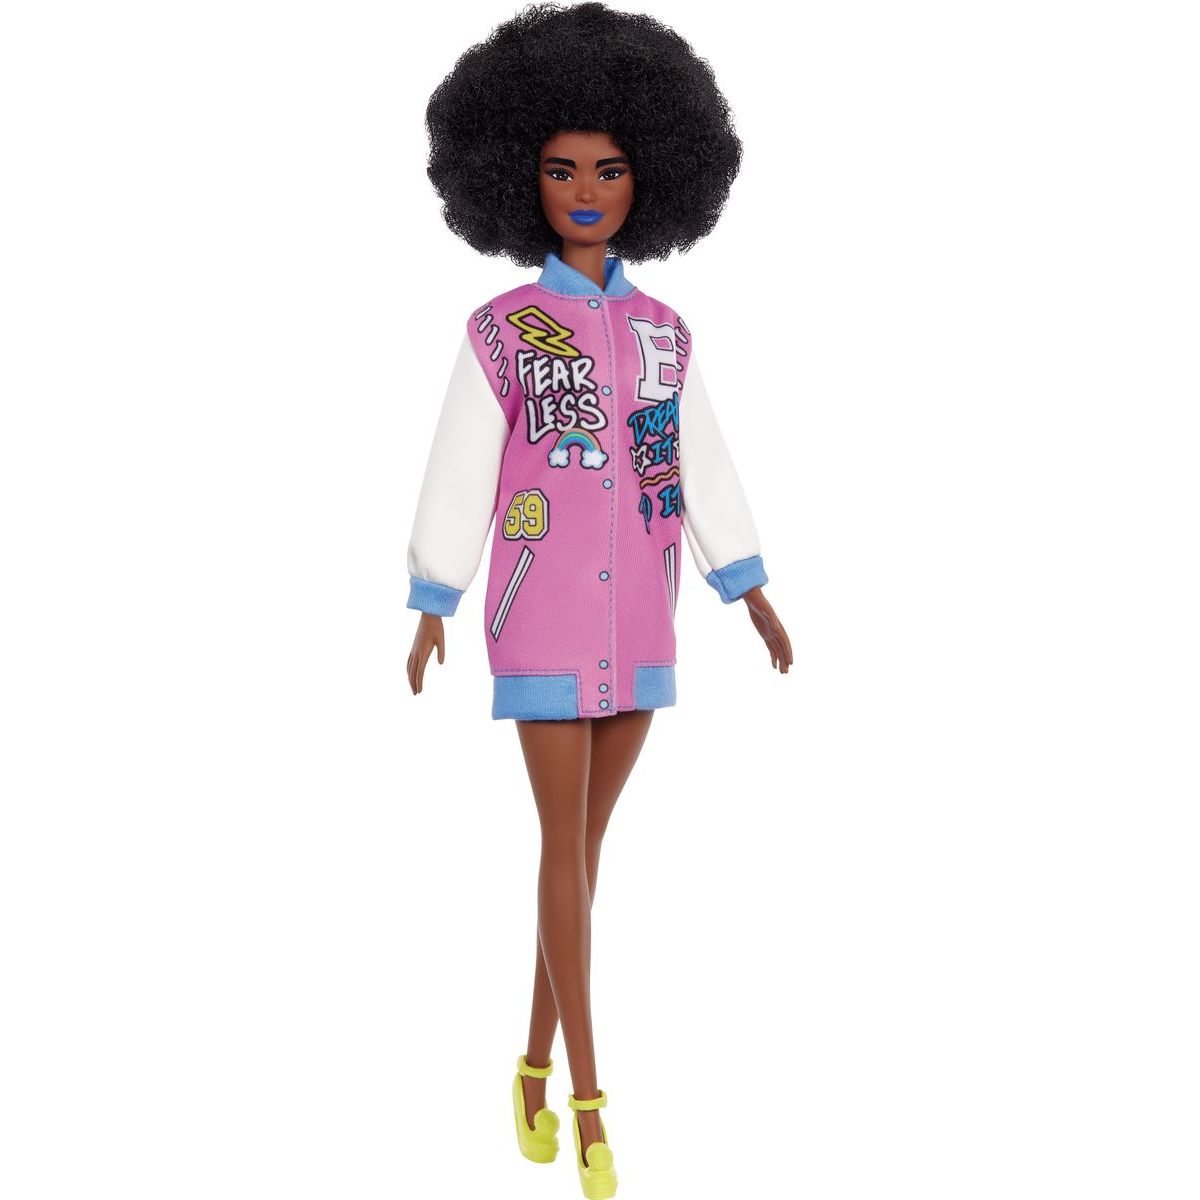 Mattel Barbie modelka v Letterman bundě